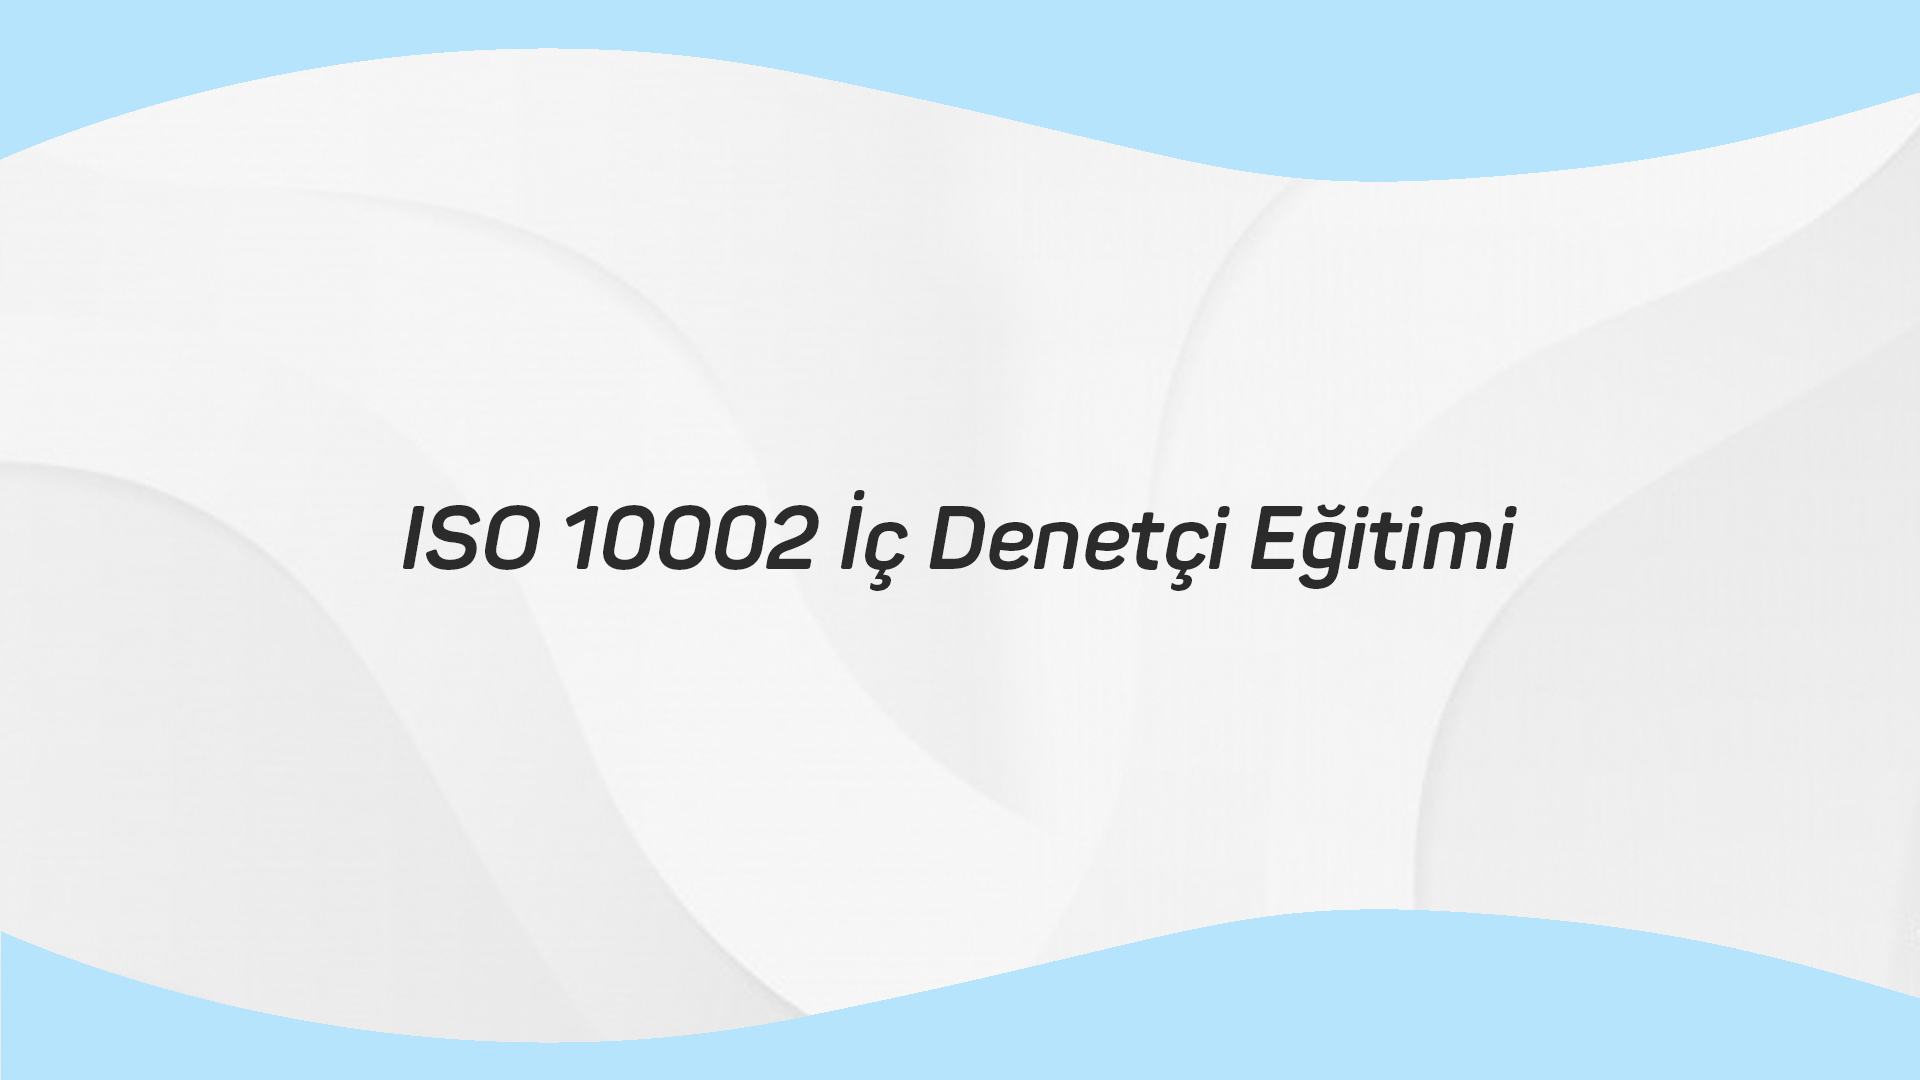 ISO 10002 İç Denetçi Eğitimi